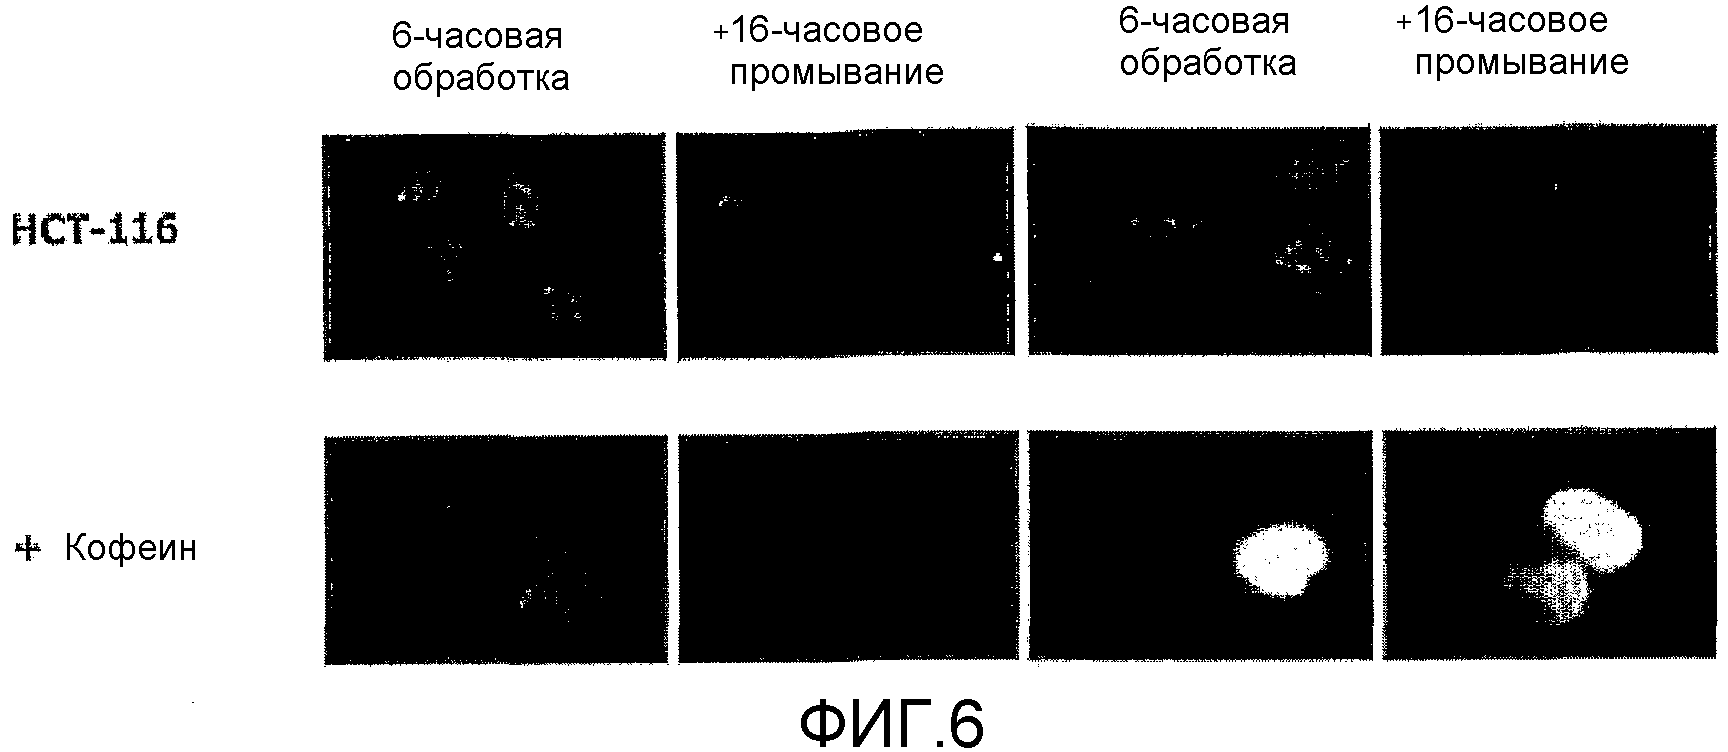 СПОСОБЫ ПРИМЕНЕНИЯ (+)-1,4-ДИГИДРО-7-[(3S, 4S)-3-МЕТОКСИ-4-(МЕТИЛАМИНО)-1-ПИРРОЛИДИНИЛ]-4-ОКСО-1-(2-ТИАЗОЛИЛ)-1,8-НАФТИРИДИН-3-КАРБОНОВОЙ КИСЛОТЫ ДЛЯ ЛЕЧЕНИЯ РАКА